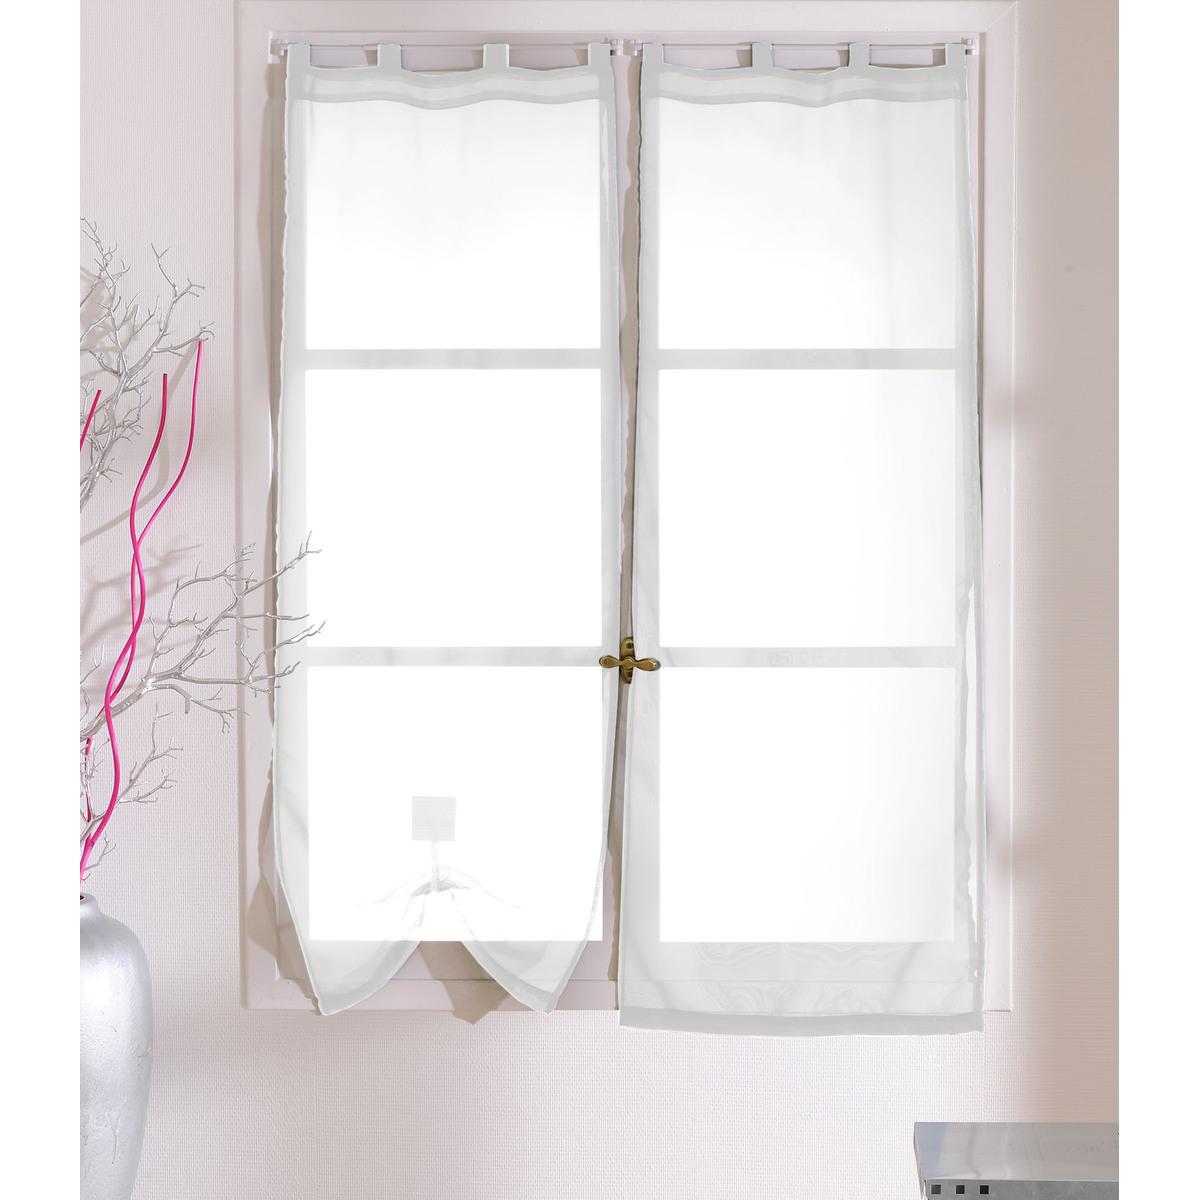 Paire de vitrages - 100% polyester - 70 x 160 cm - Blanc